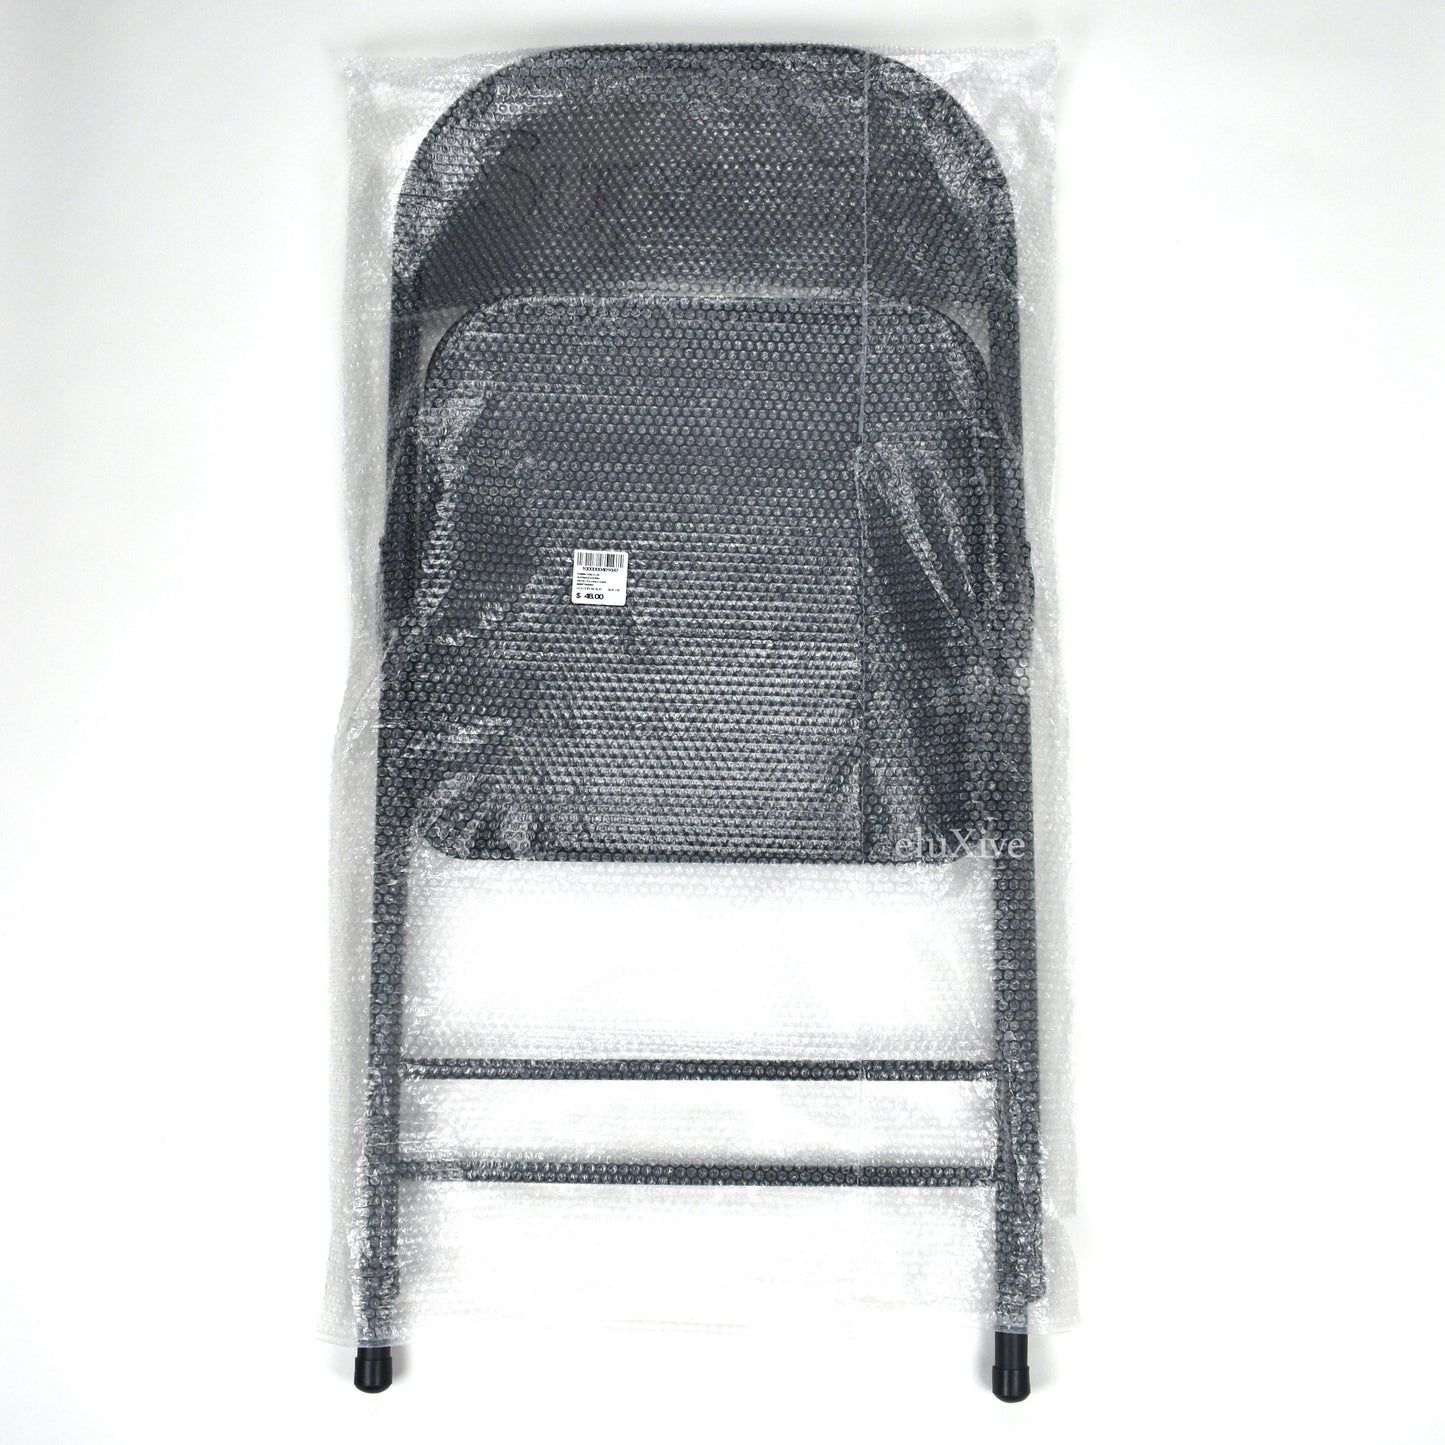 Supreme - Black Box Logo Metal Folding Chair